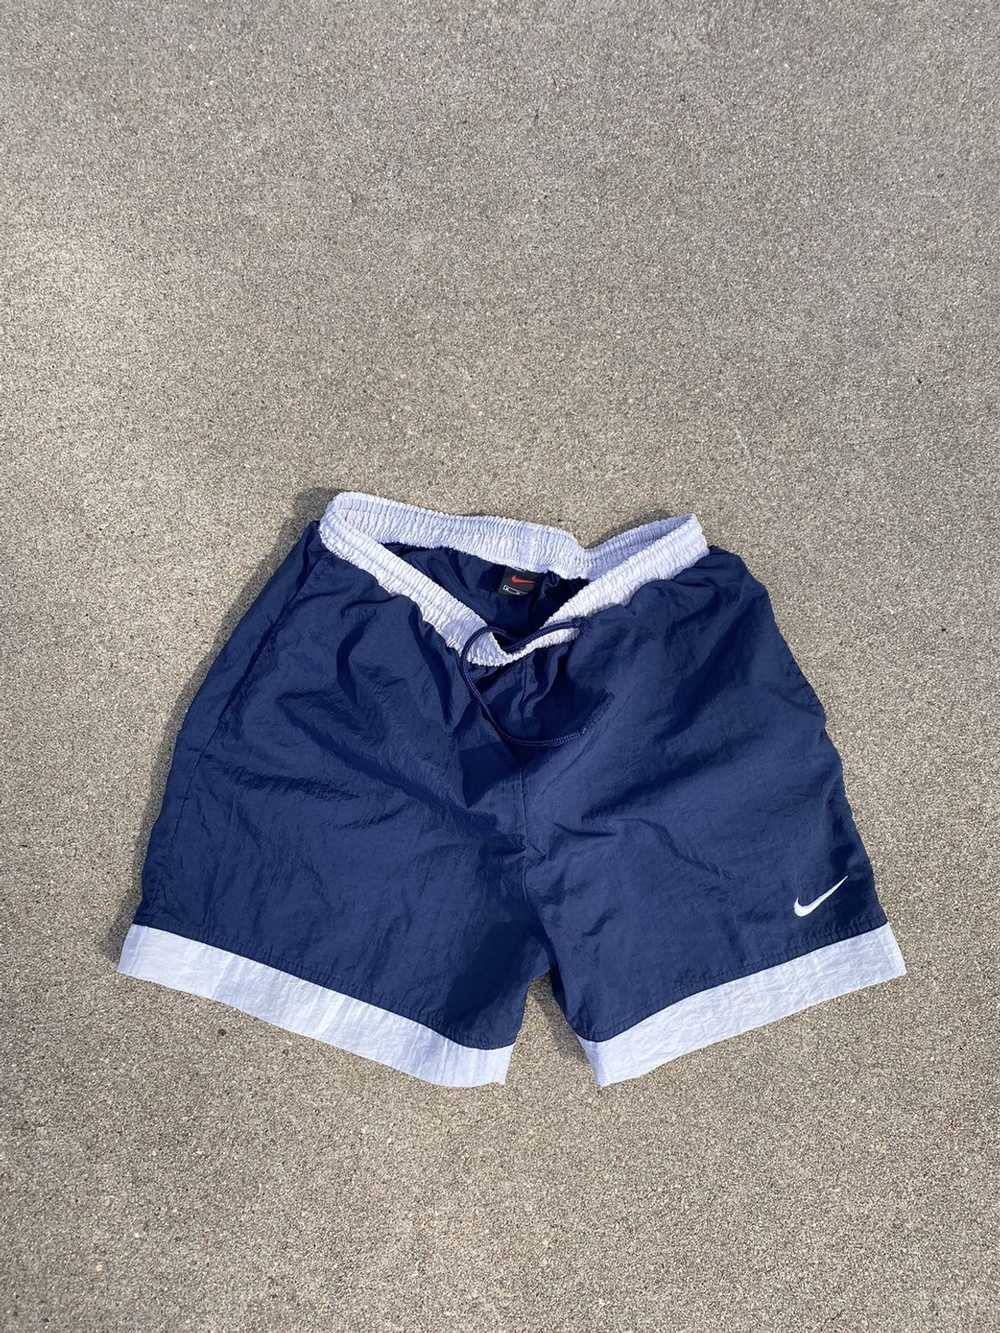 Nike Early 2000’s Navy Nike Nylon Shorts - image 1